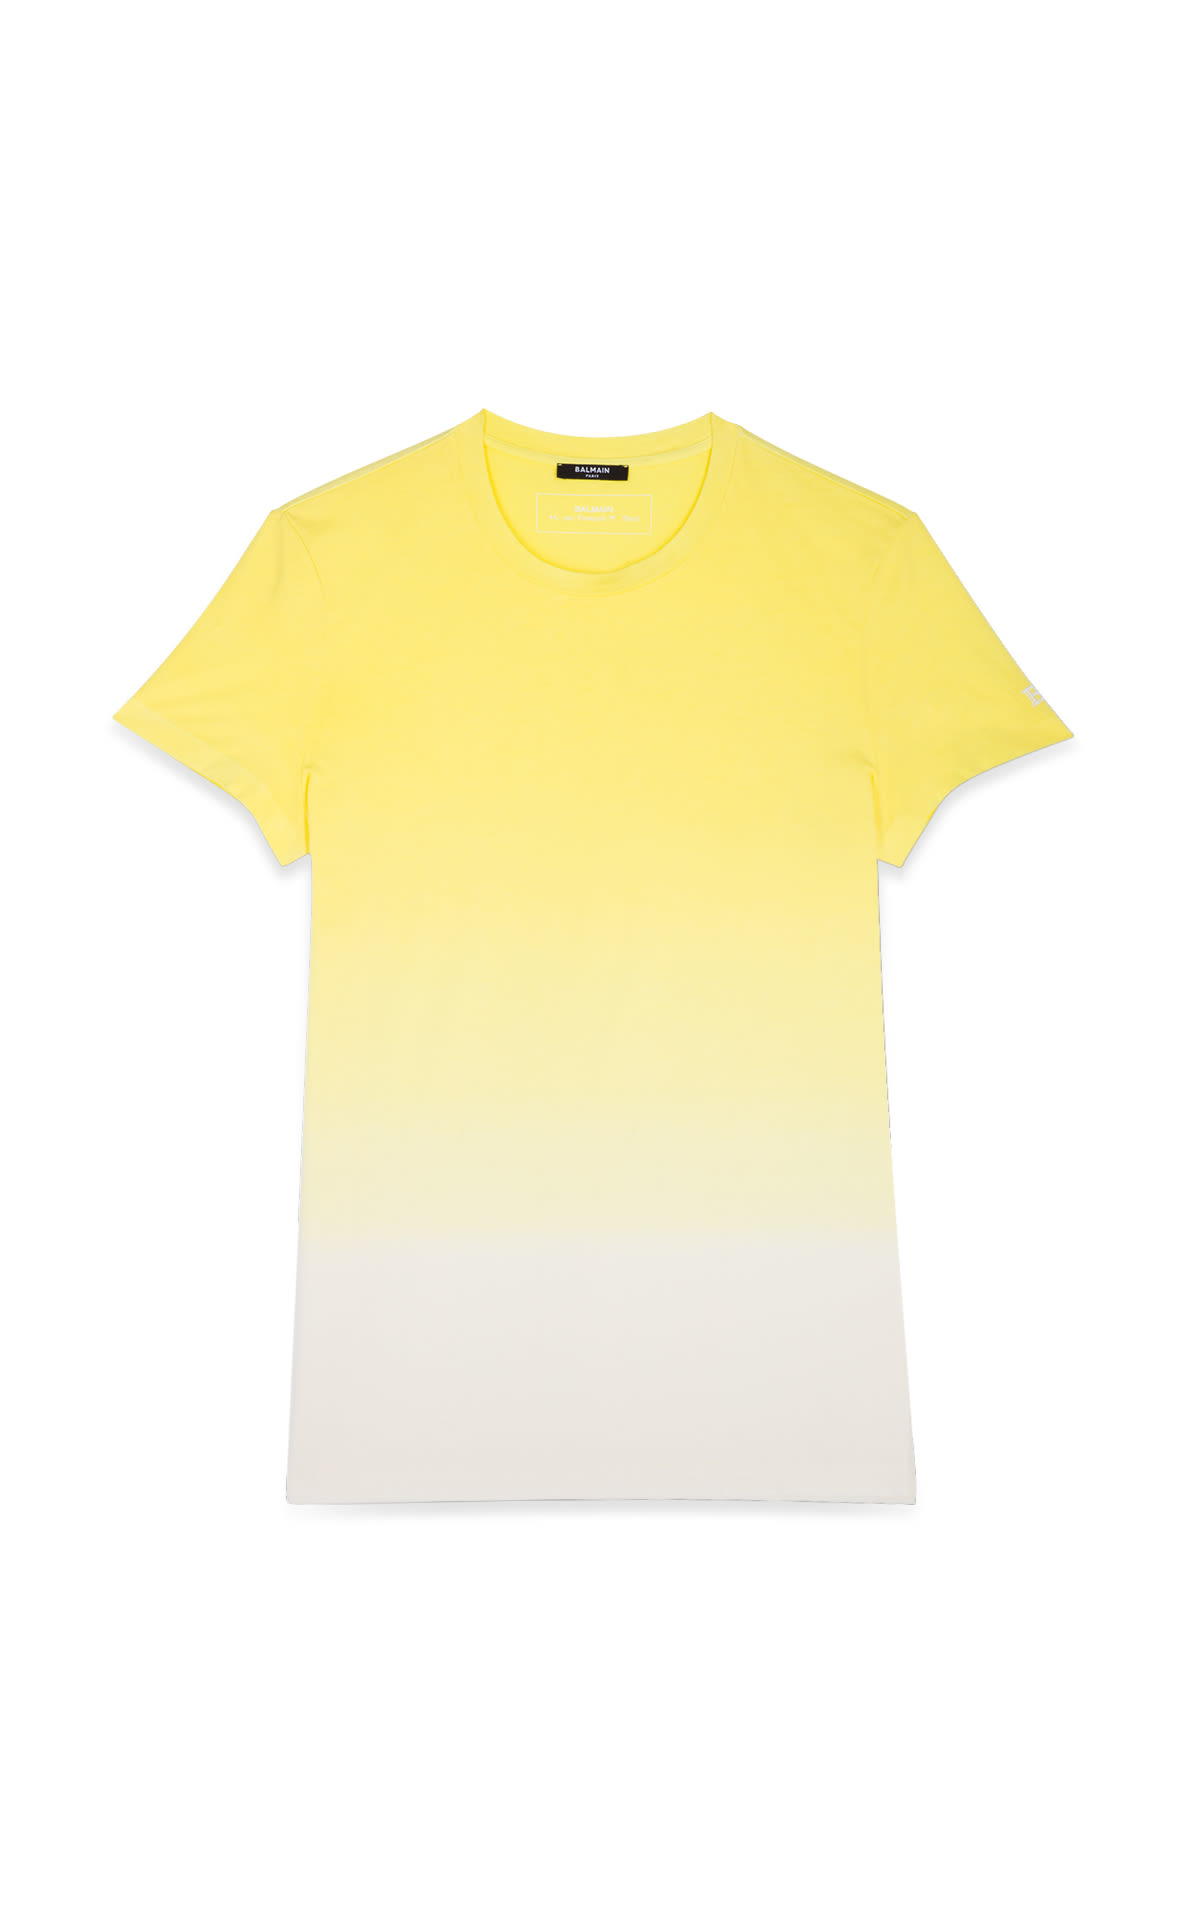 La Vallée Village Balmain yellow t-shirt